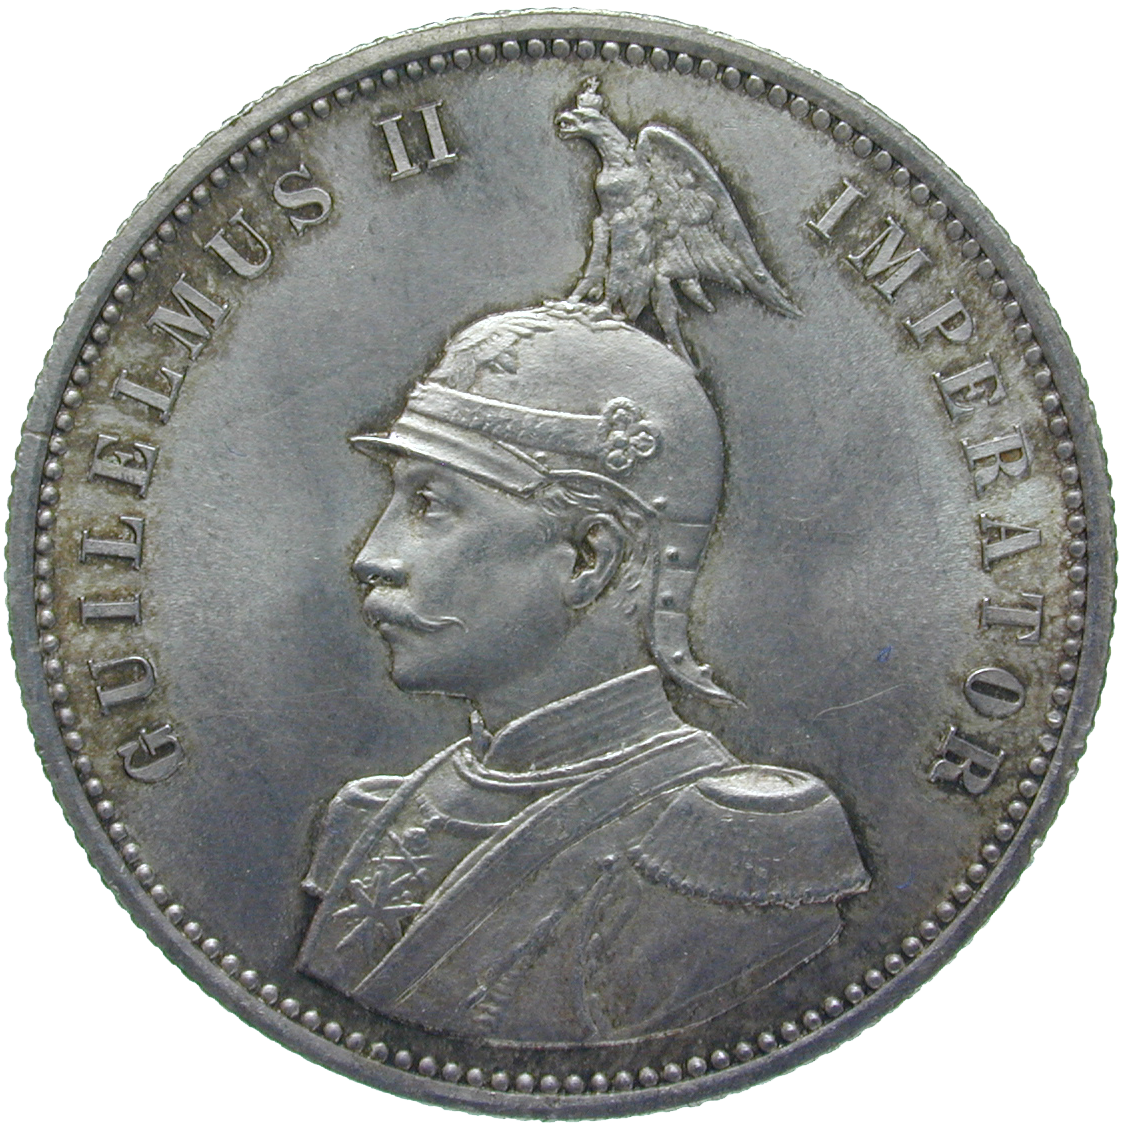 Deutsches Kaiserreich für Deutsch-Ostafrika, Wilhelm II., 1 Rupie 1890 (obverse)